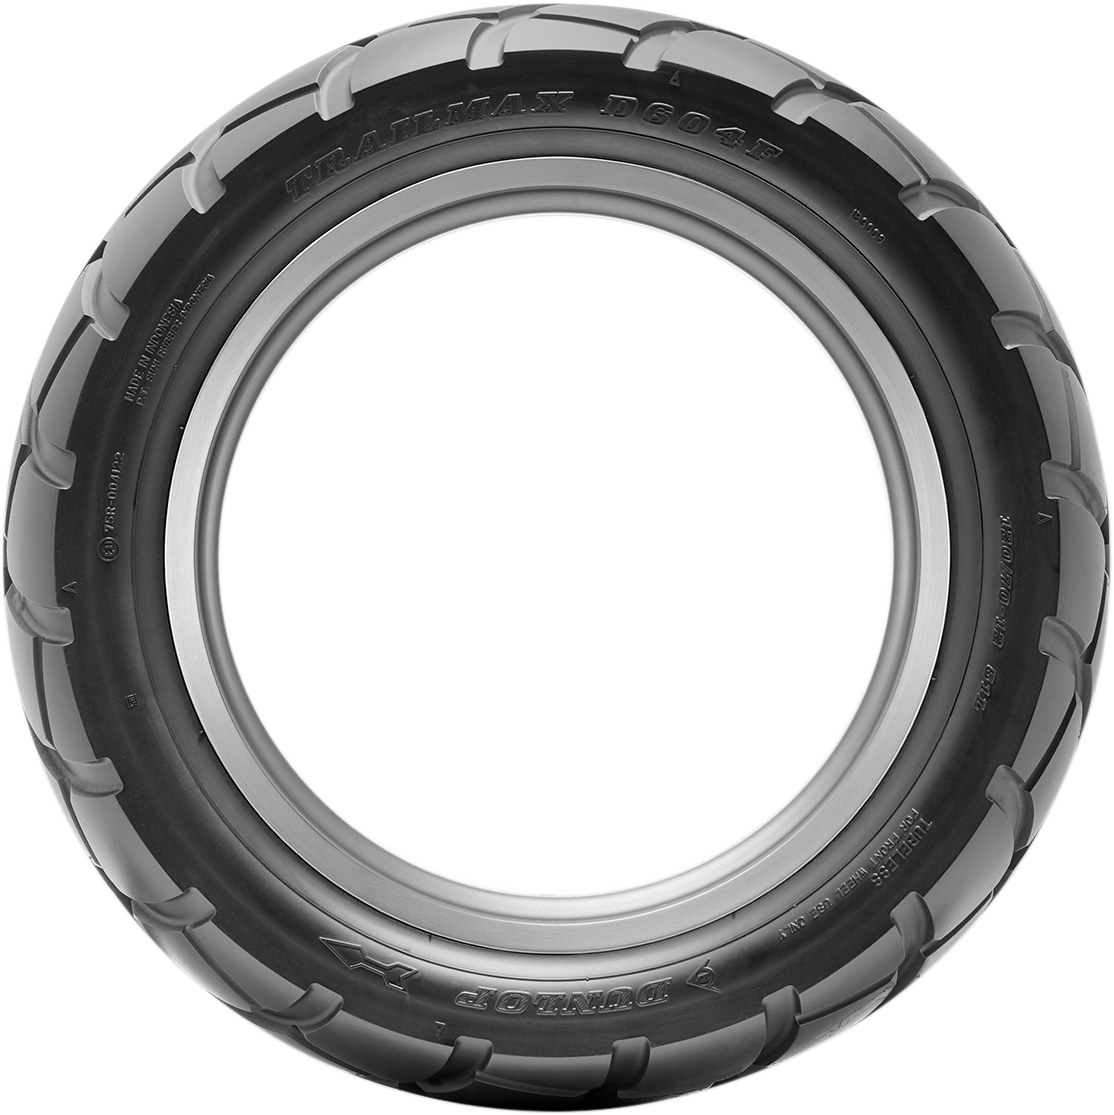 DUNLOP Tire - D604 - Front - 120/70-12 - 51L 45215048